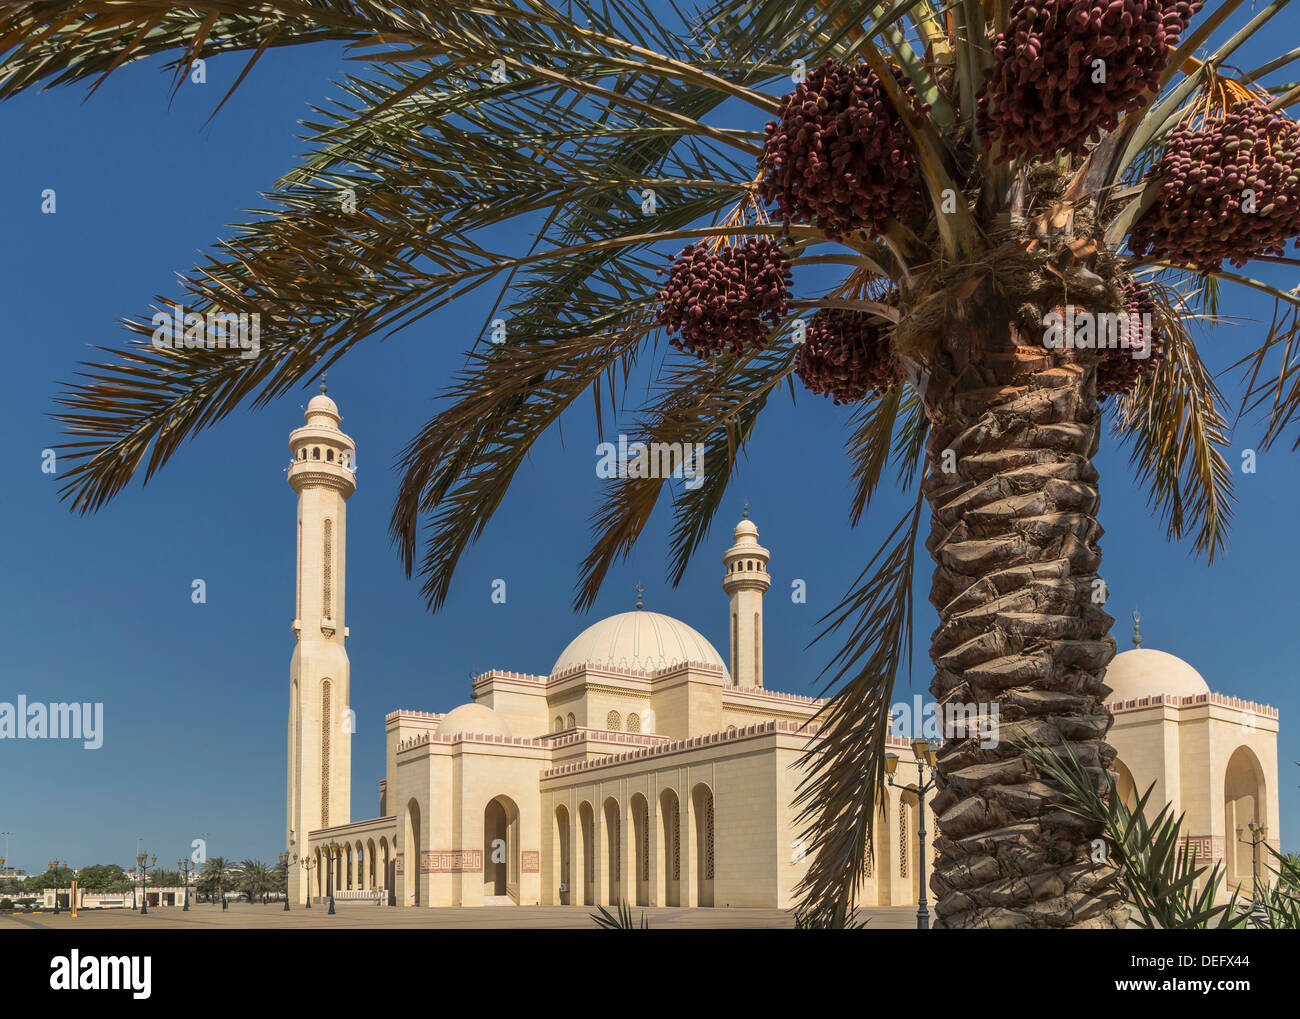 Al Fateh Grand Mosque, Manama, Bahrain, Middle East Stock Photo